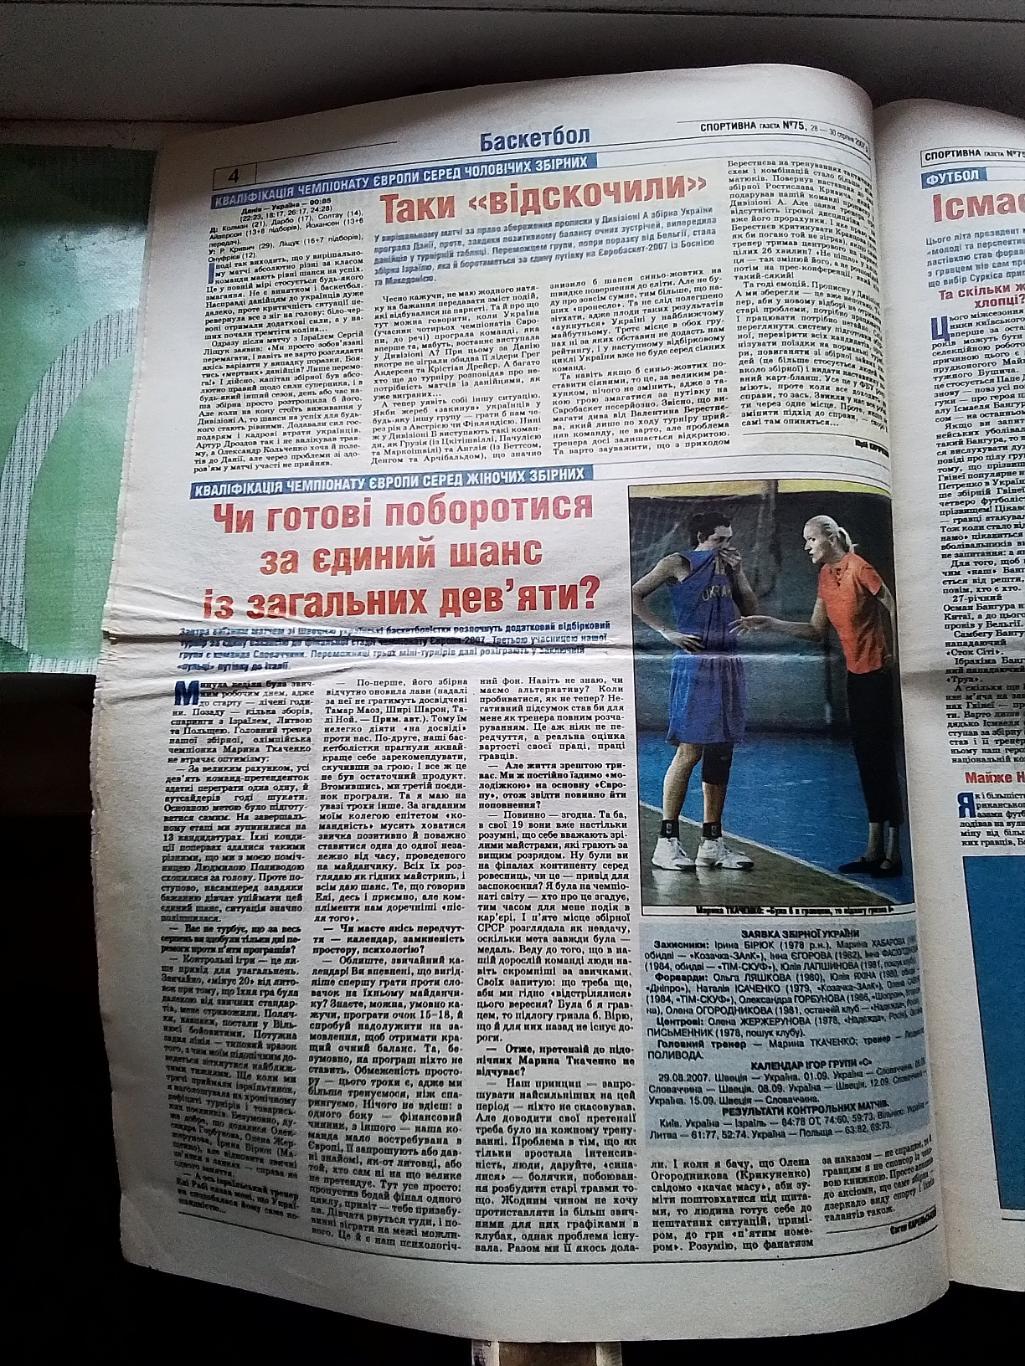 Спортивна газета 28 - 30 08 2007 N 75 (8217) Бангура Д Киев 7 тур чемп Украины 1